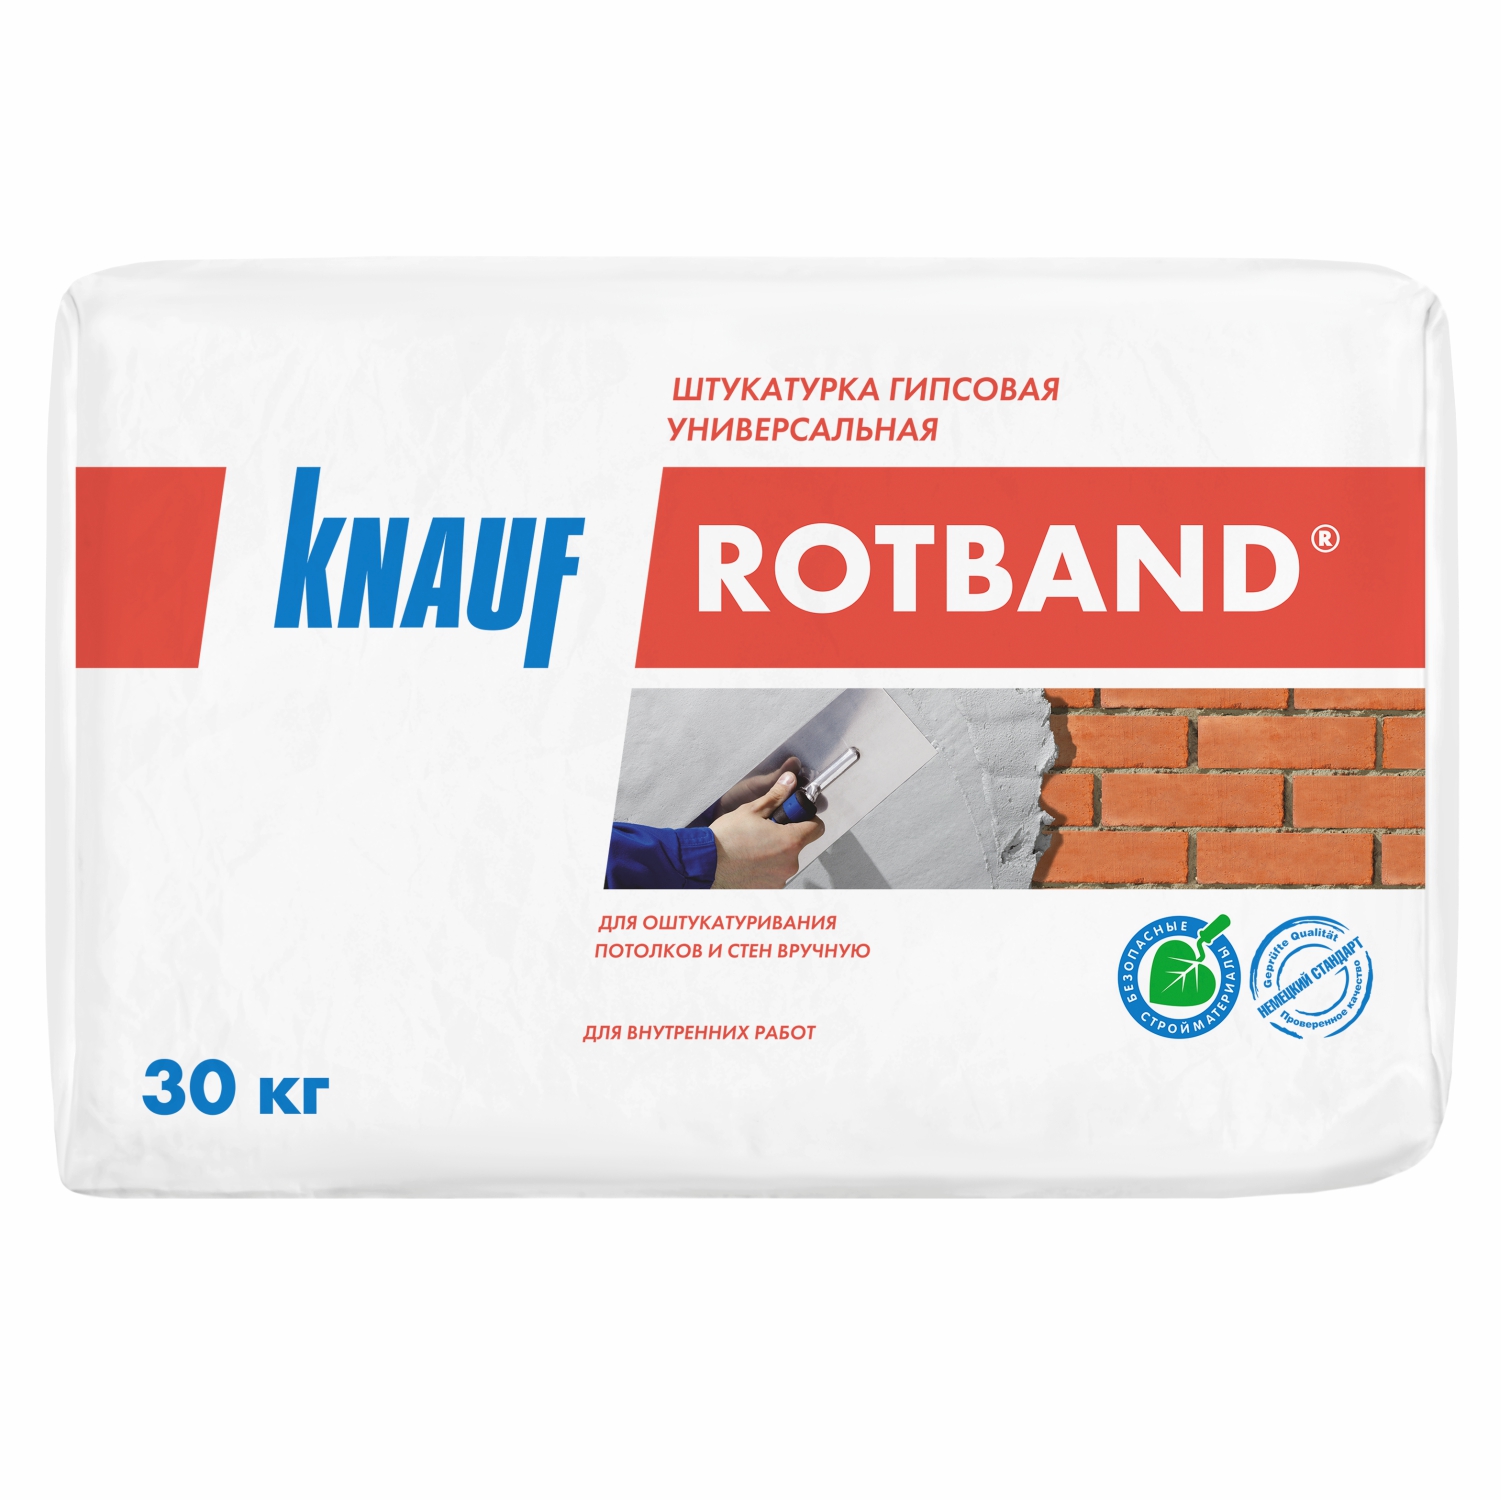 Штукатурка гипсовая универсальная Knauf ROTBAND (Ротбанд), 30 кг 